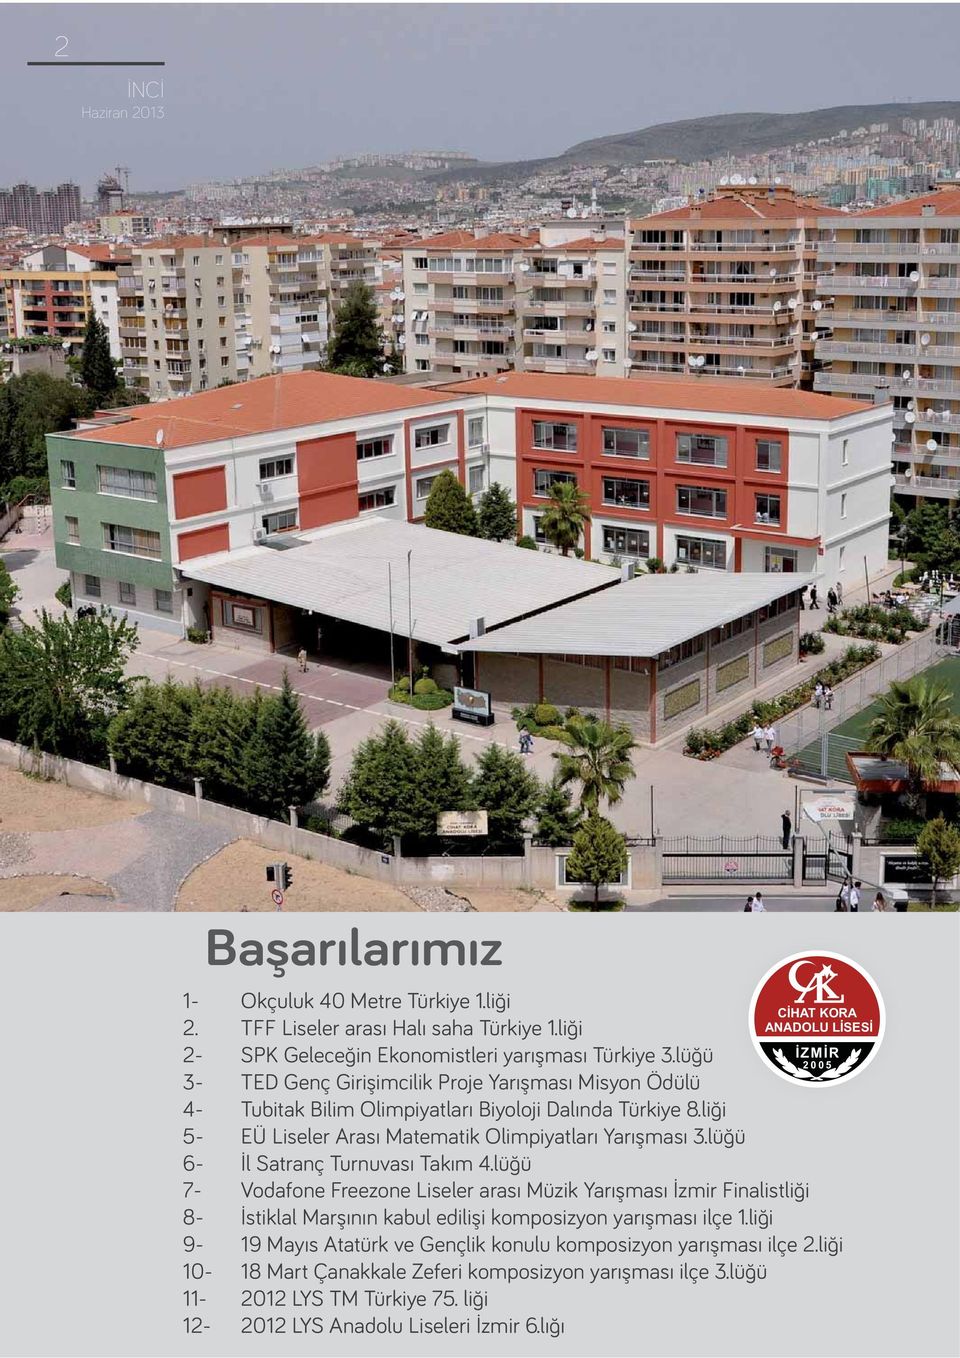 Cihat Kora Anadolu Lisesi - PDF Free Download